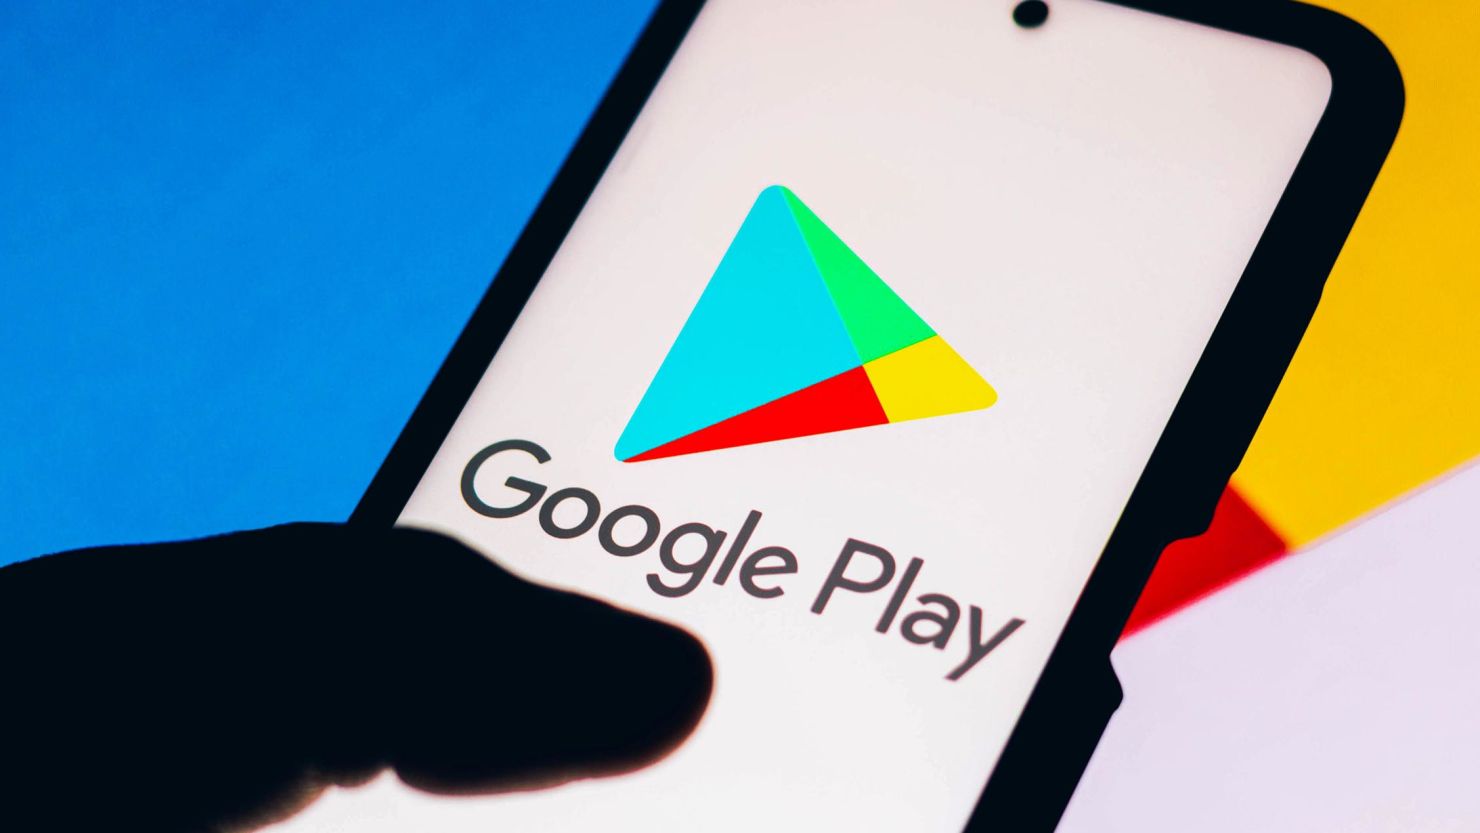 Google Play Store introduce la nuova opzione di pagamento "Chiedi a qualcun altro di pagare".